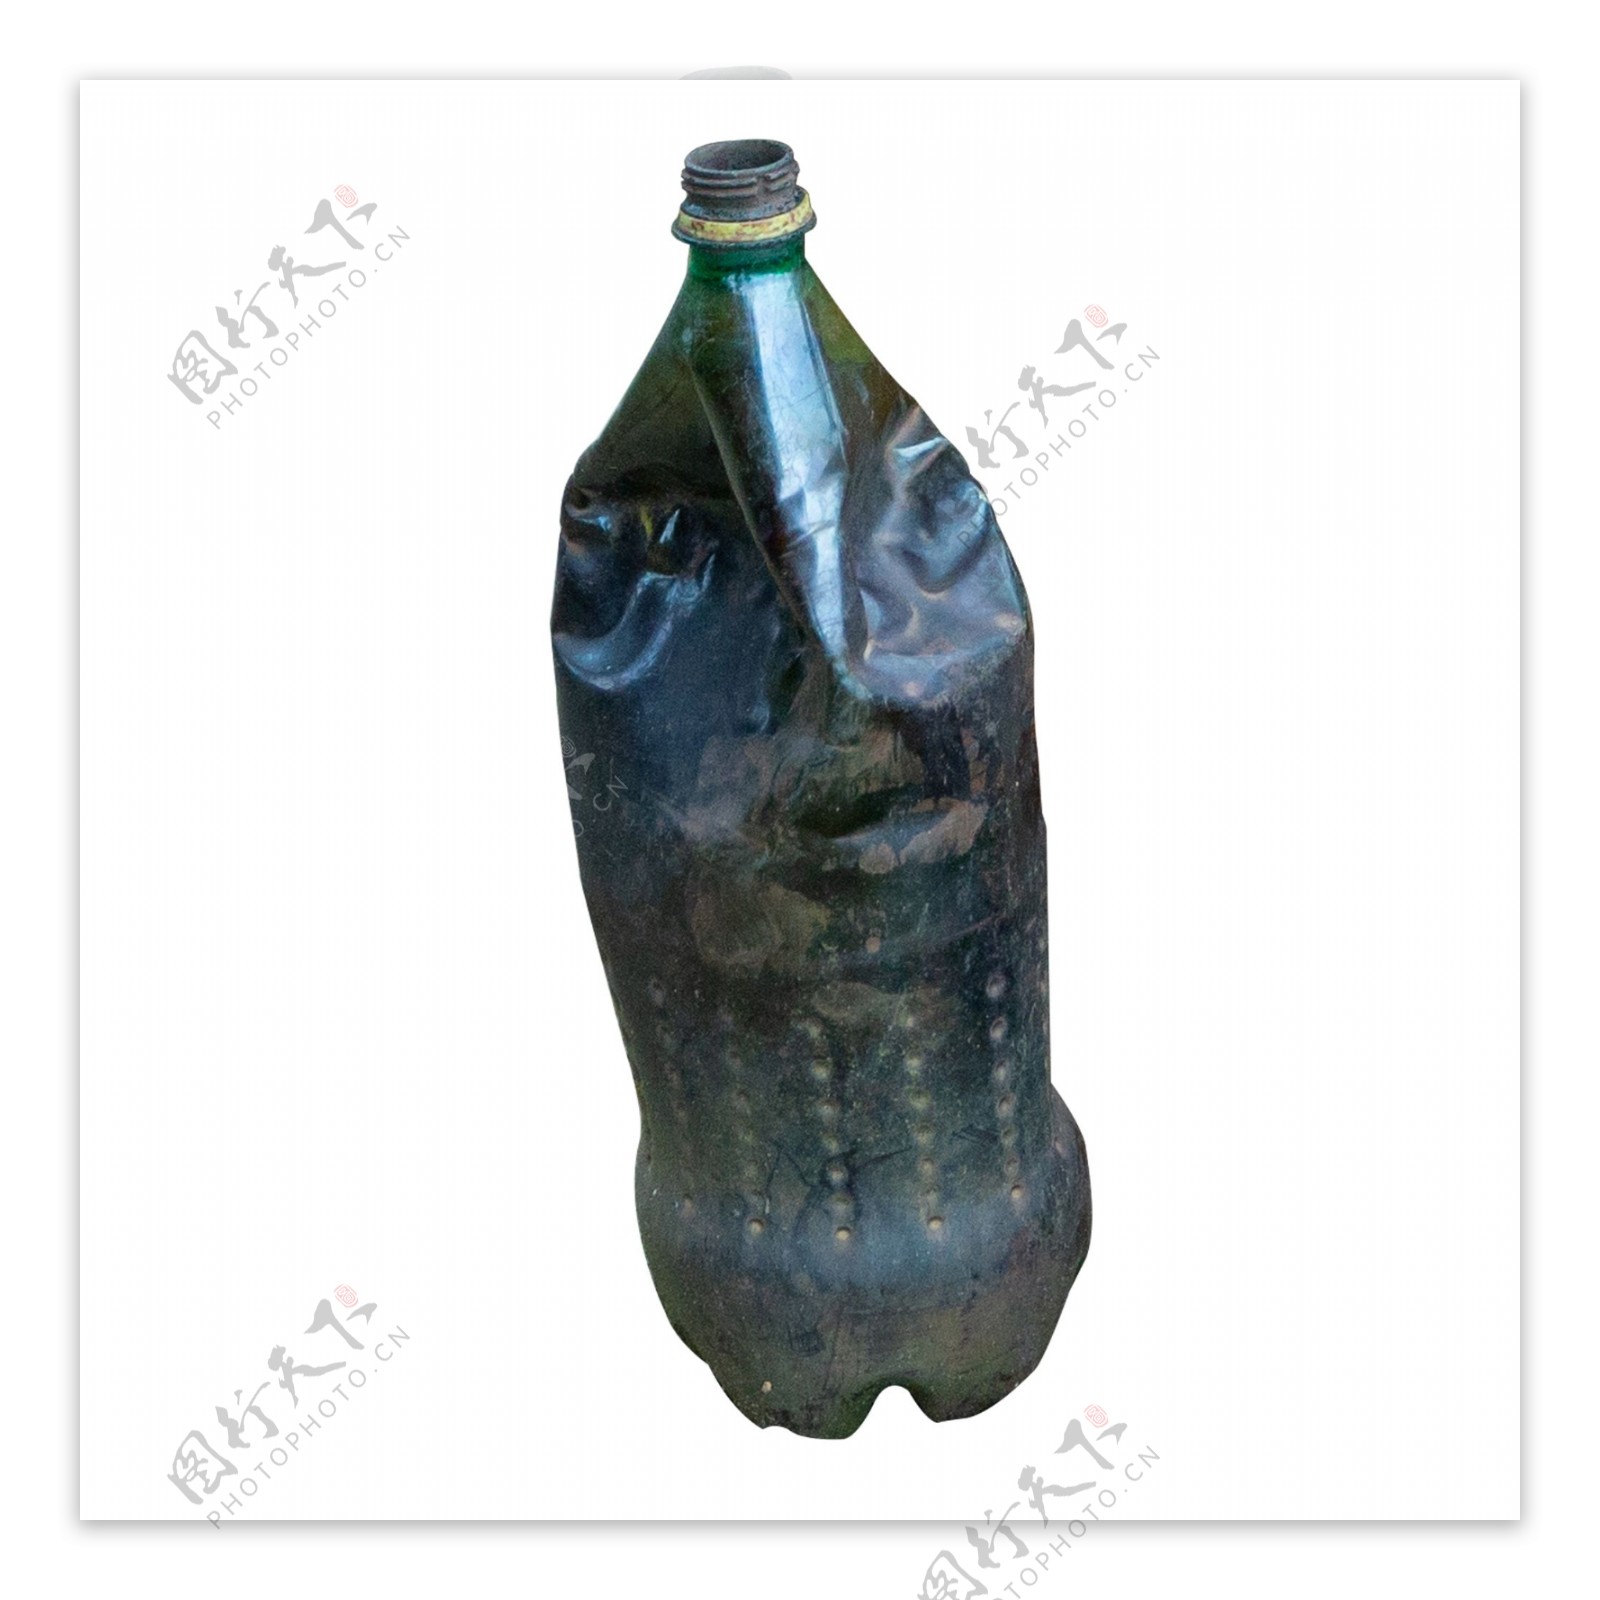 塑料油瓶